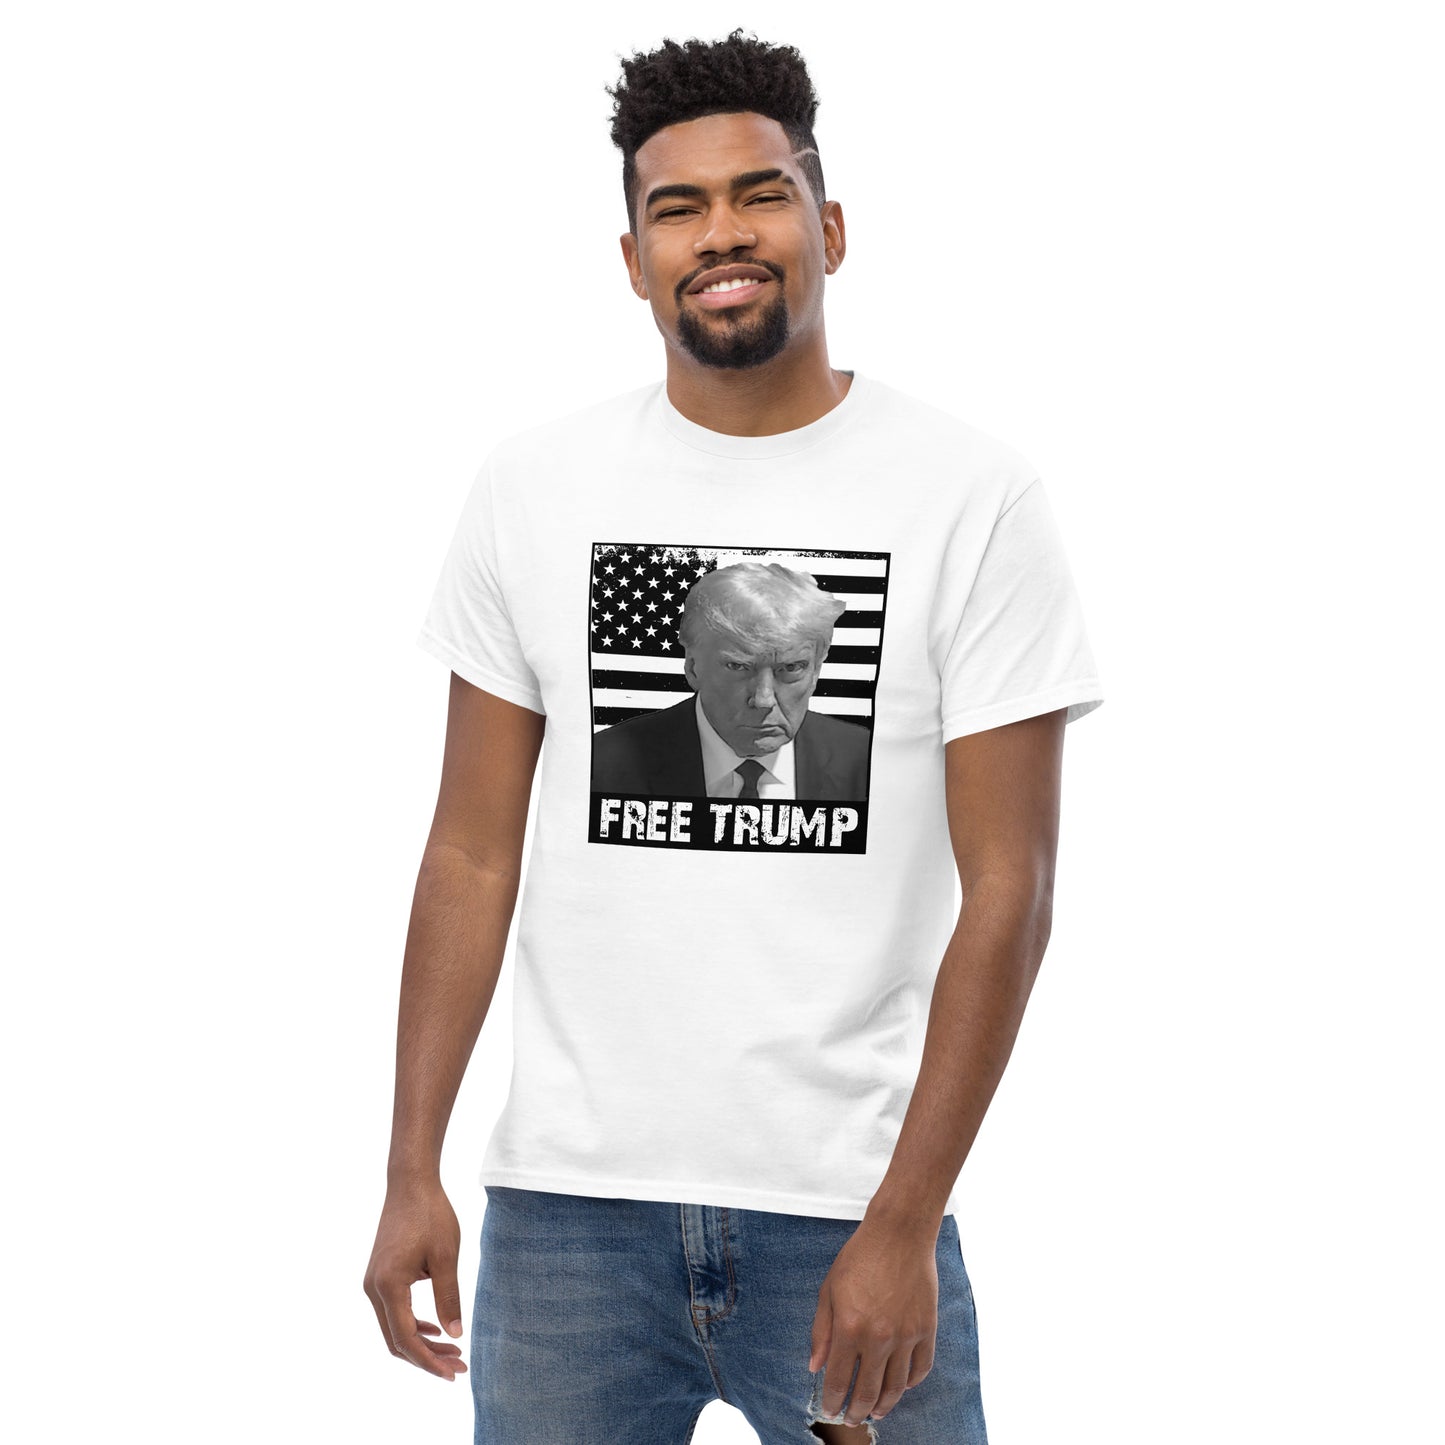 Free Trump T-Shirt